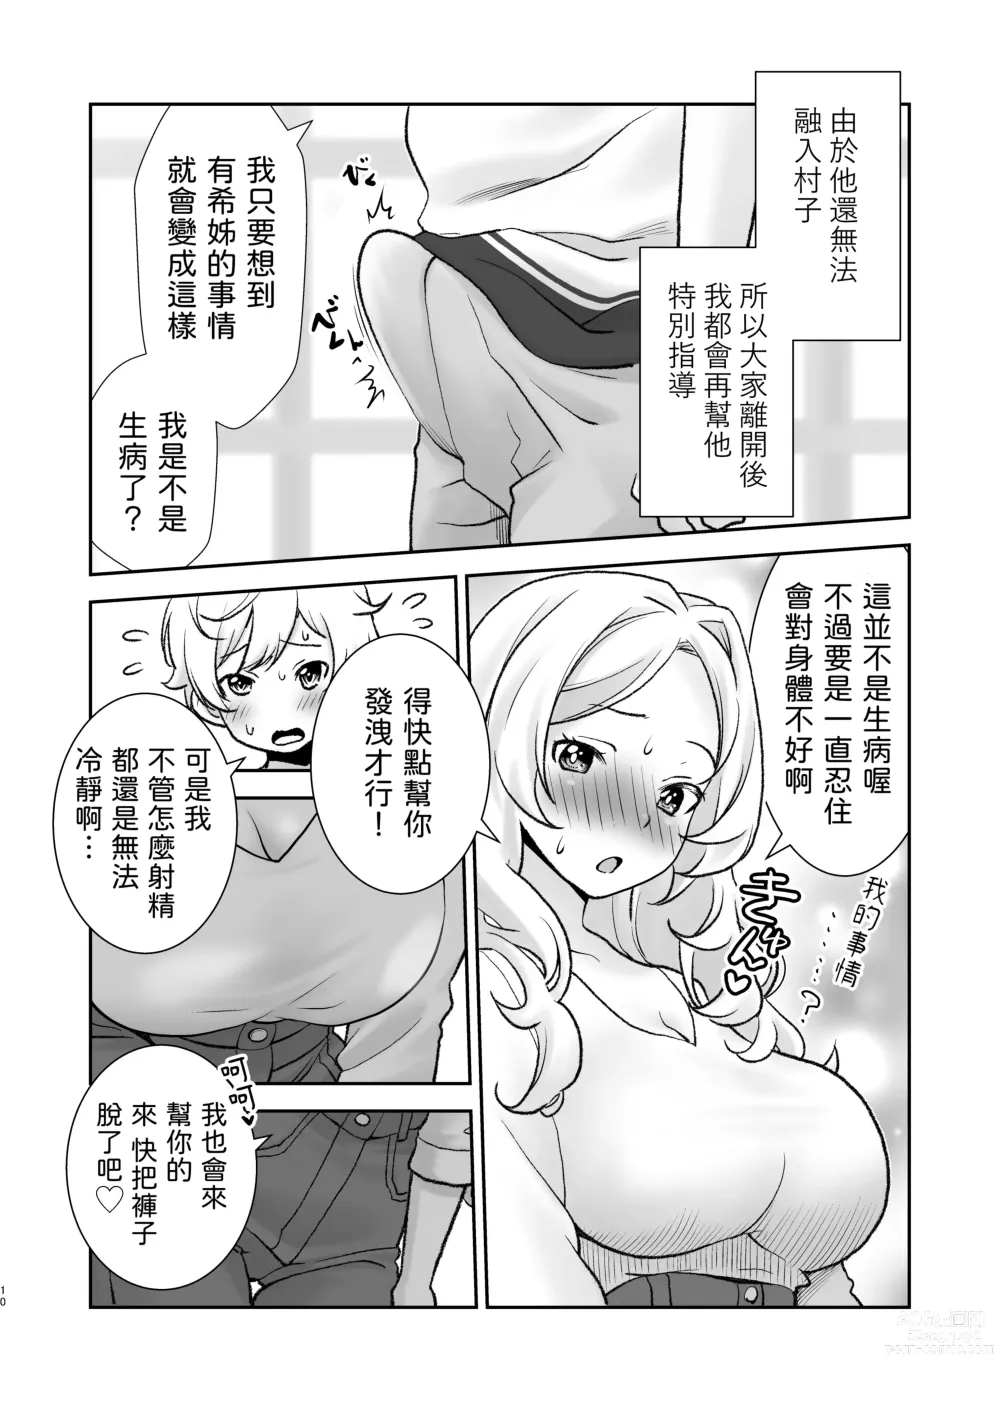 Page 10 of doujinshi Mura ni wa Juku ga Nai no de Watashi ga Benkyou wo Oshiete-imasu.